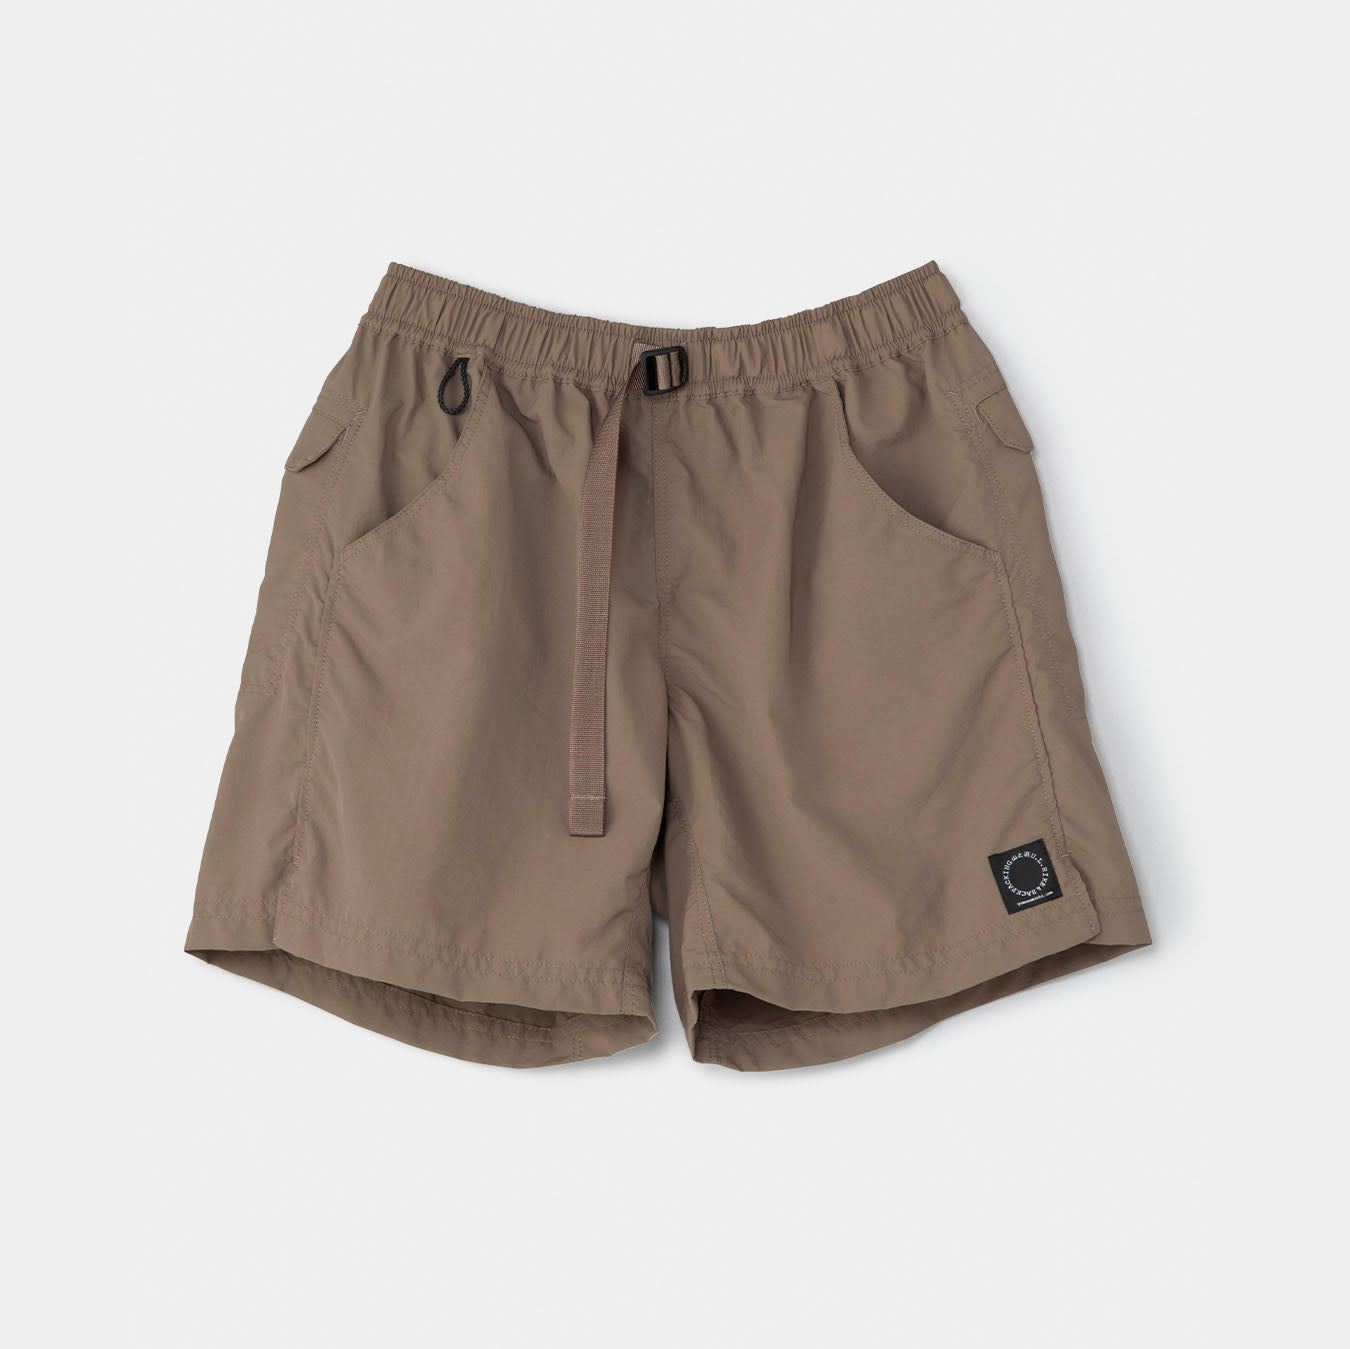 山と道 5-pocket shorts Deep Forest 2018 S